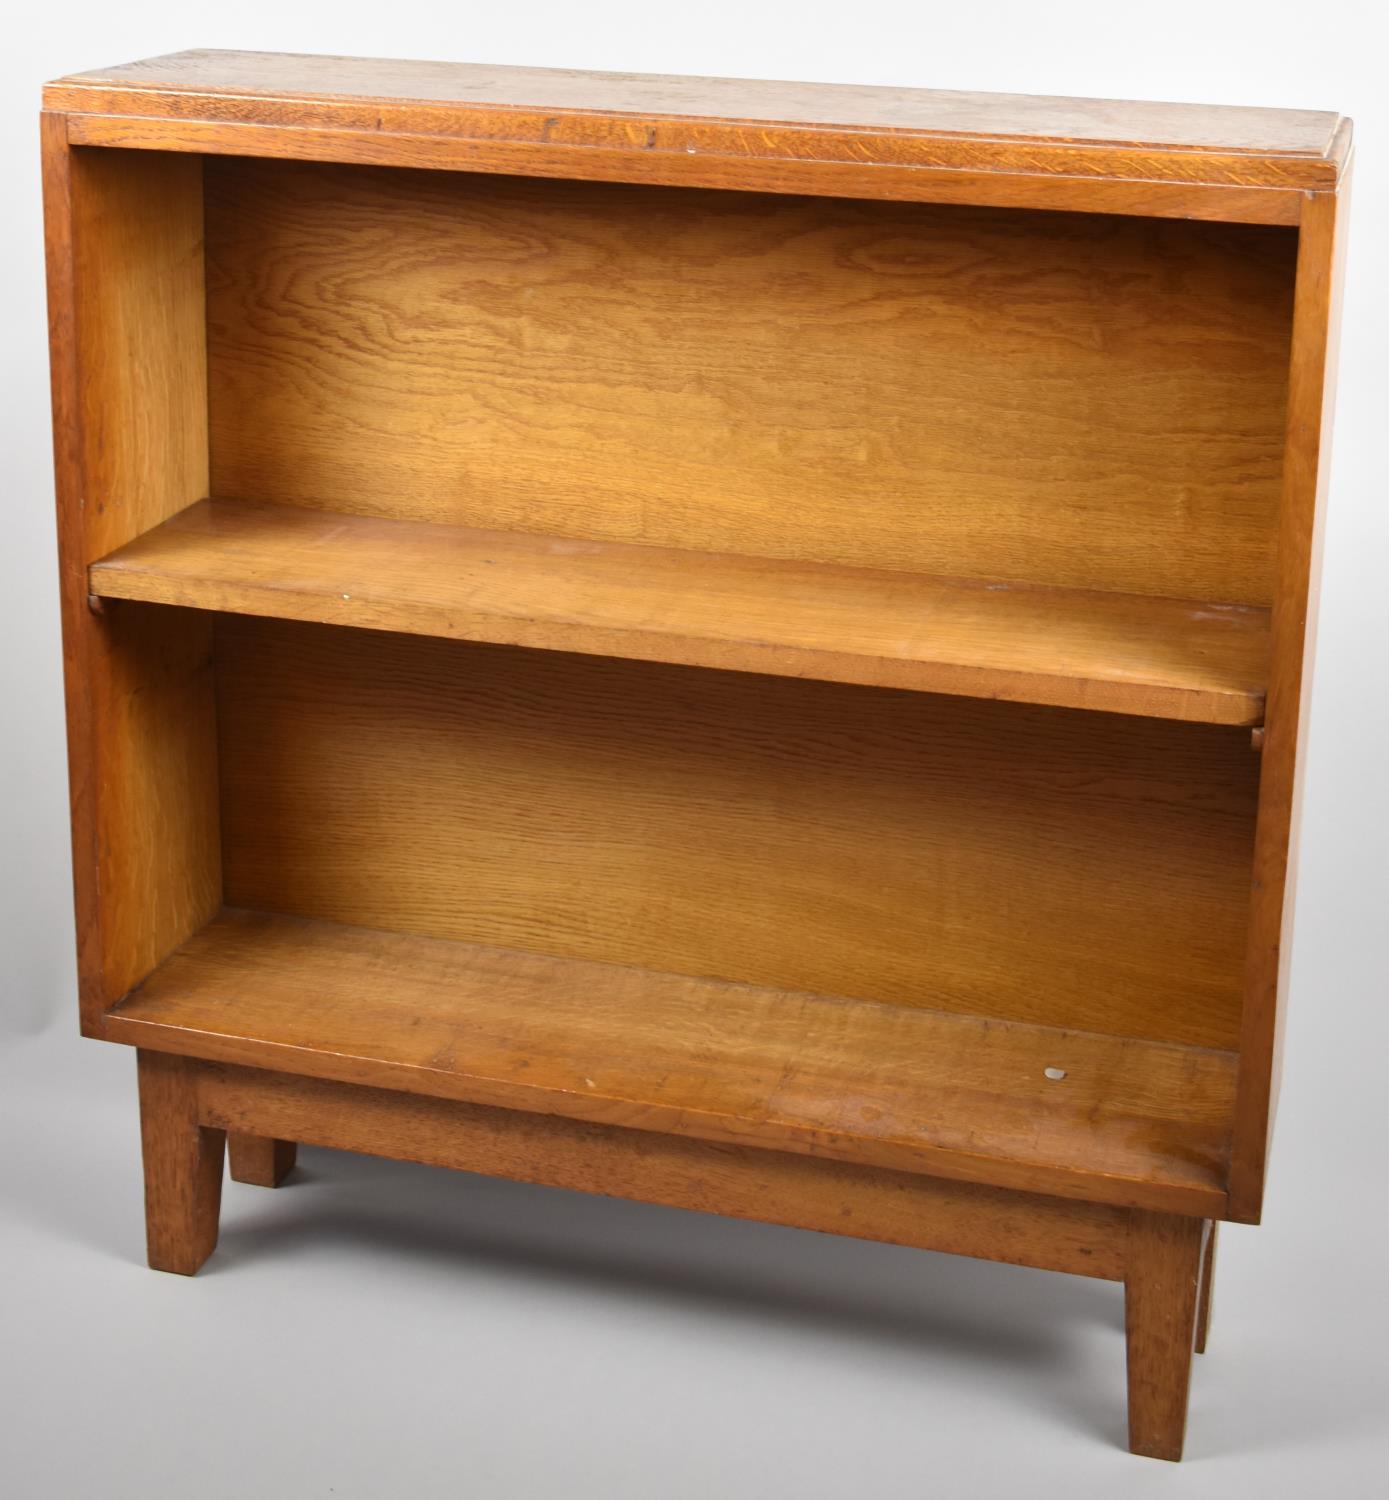 A Mid 20th Century Oak Two Shelf Open Bookcase, 82cm Wide